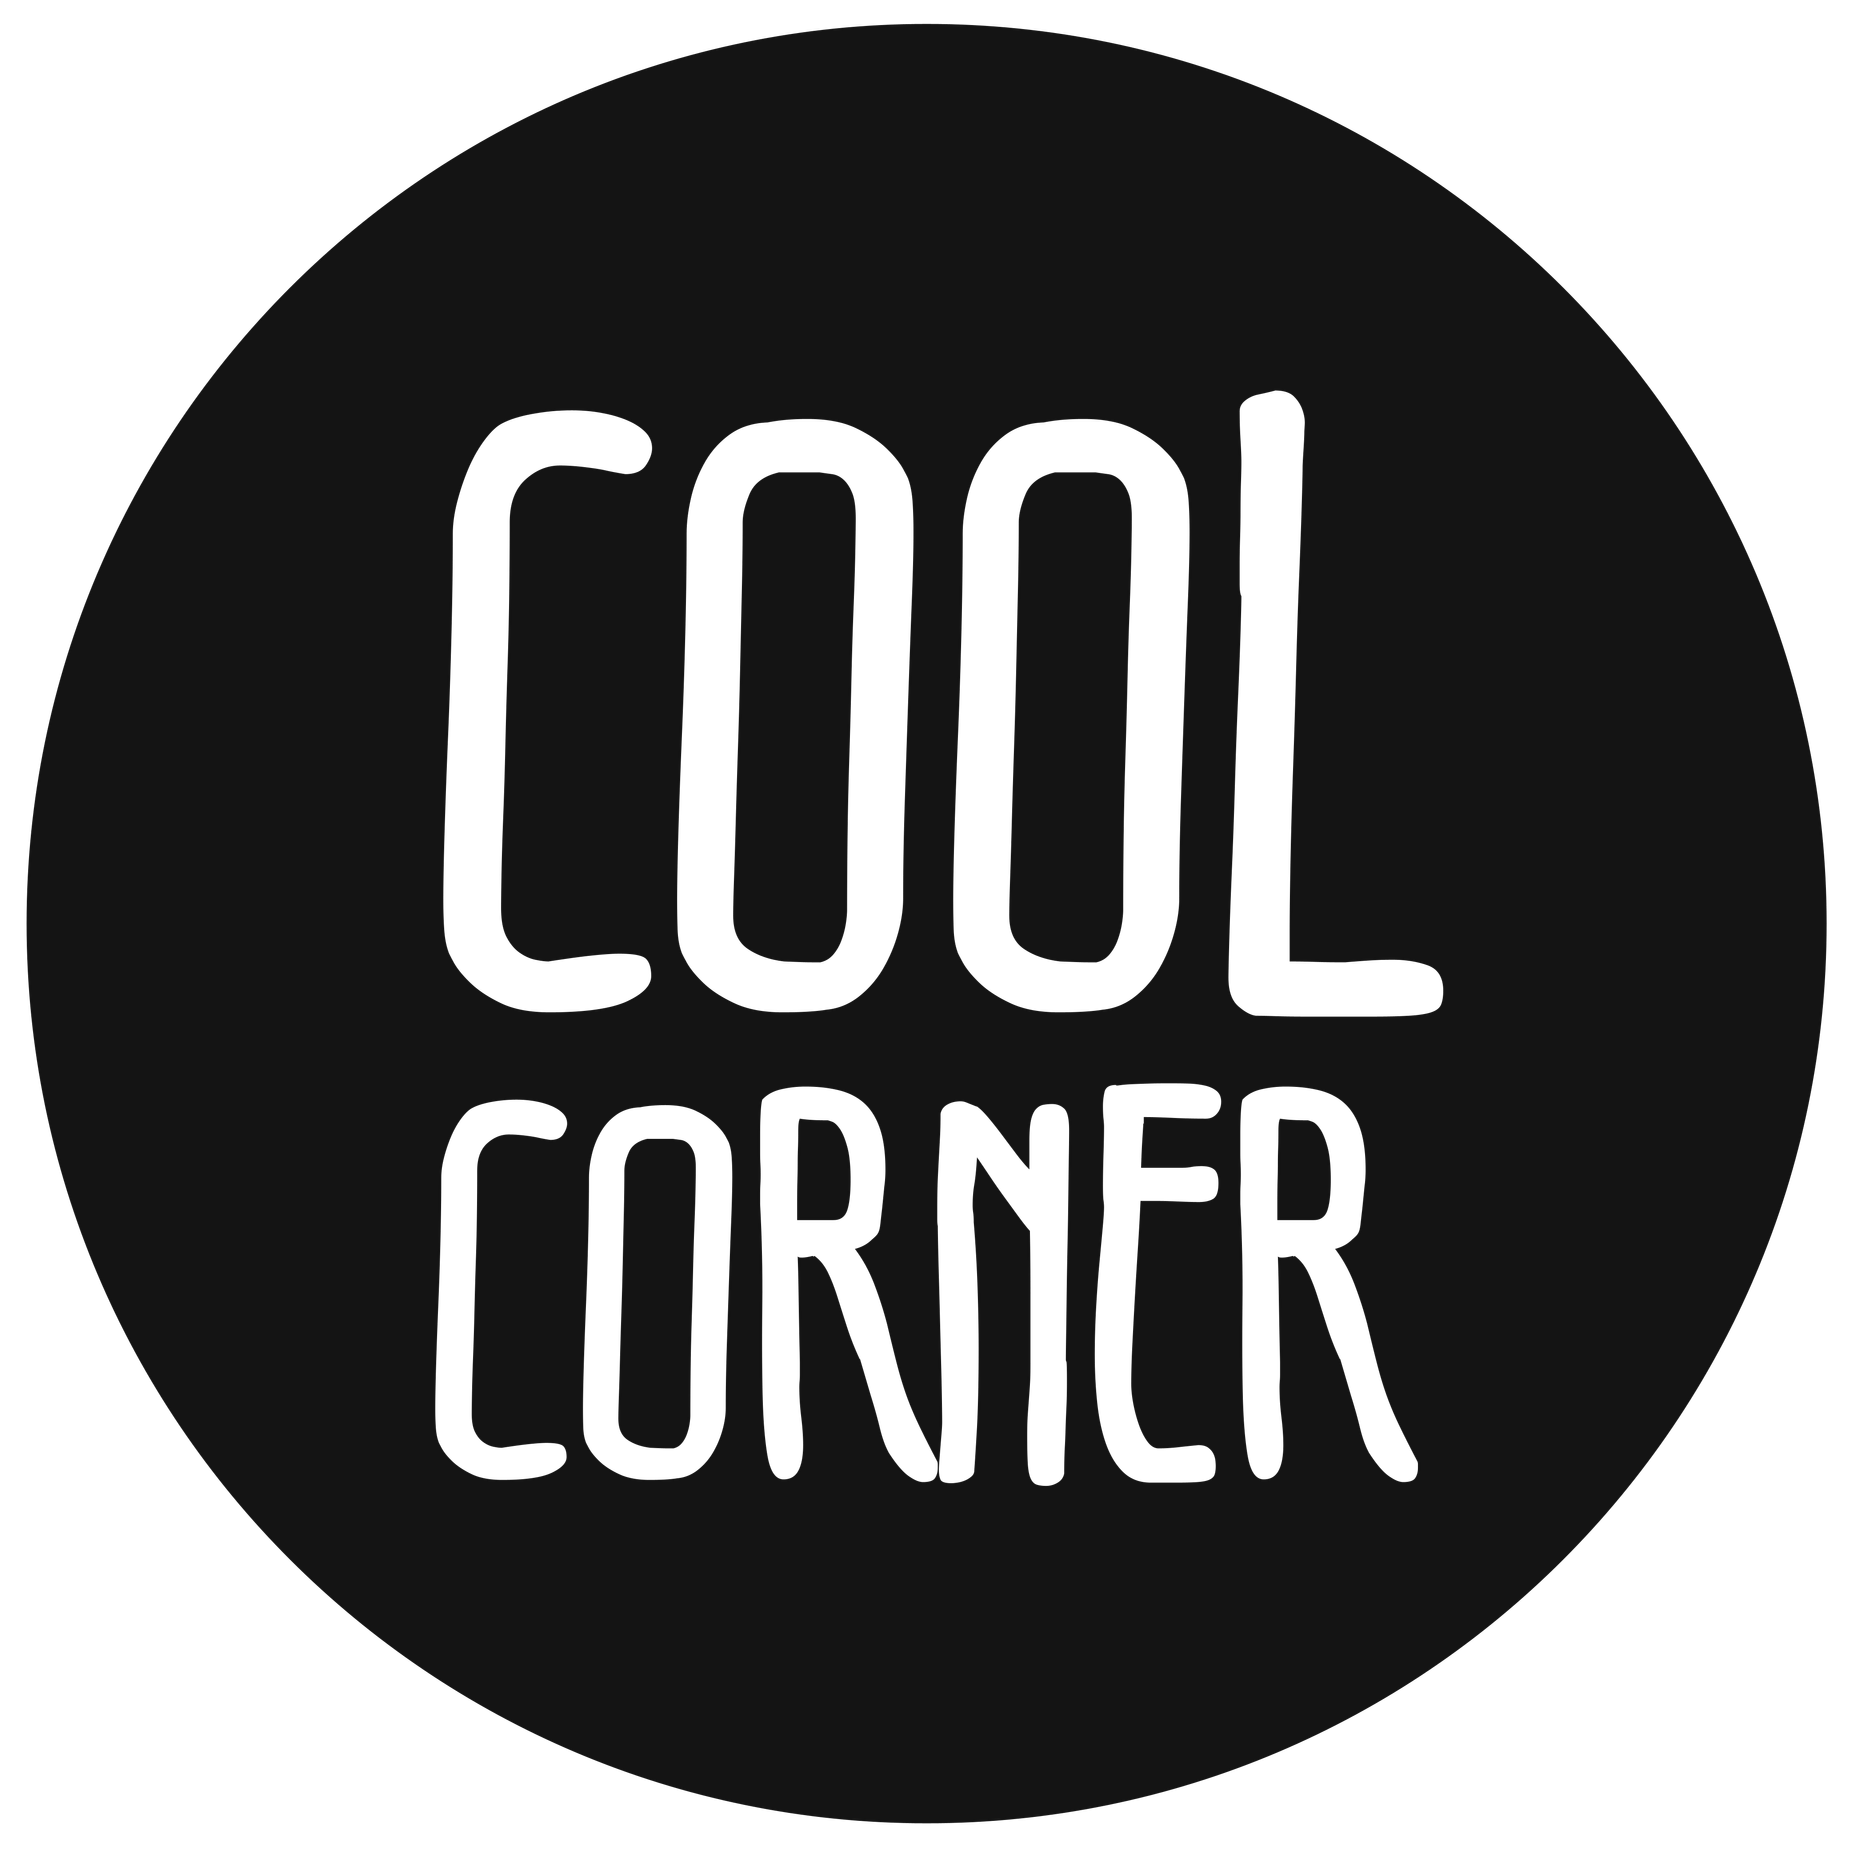 Cool Corner LLC